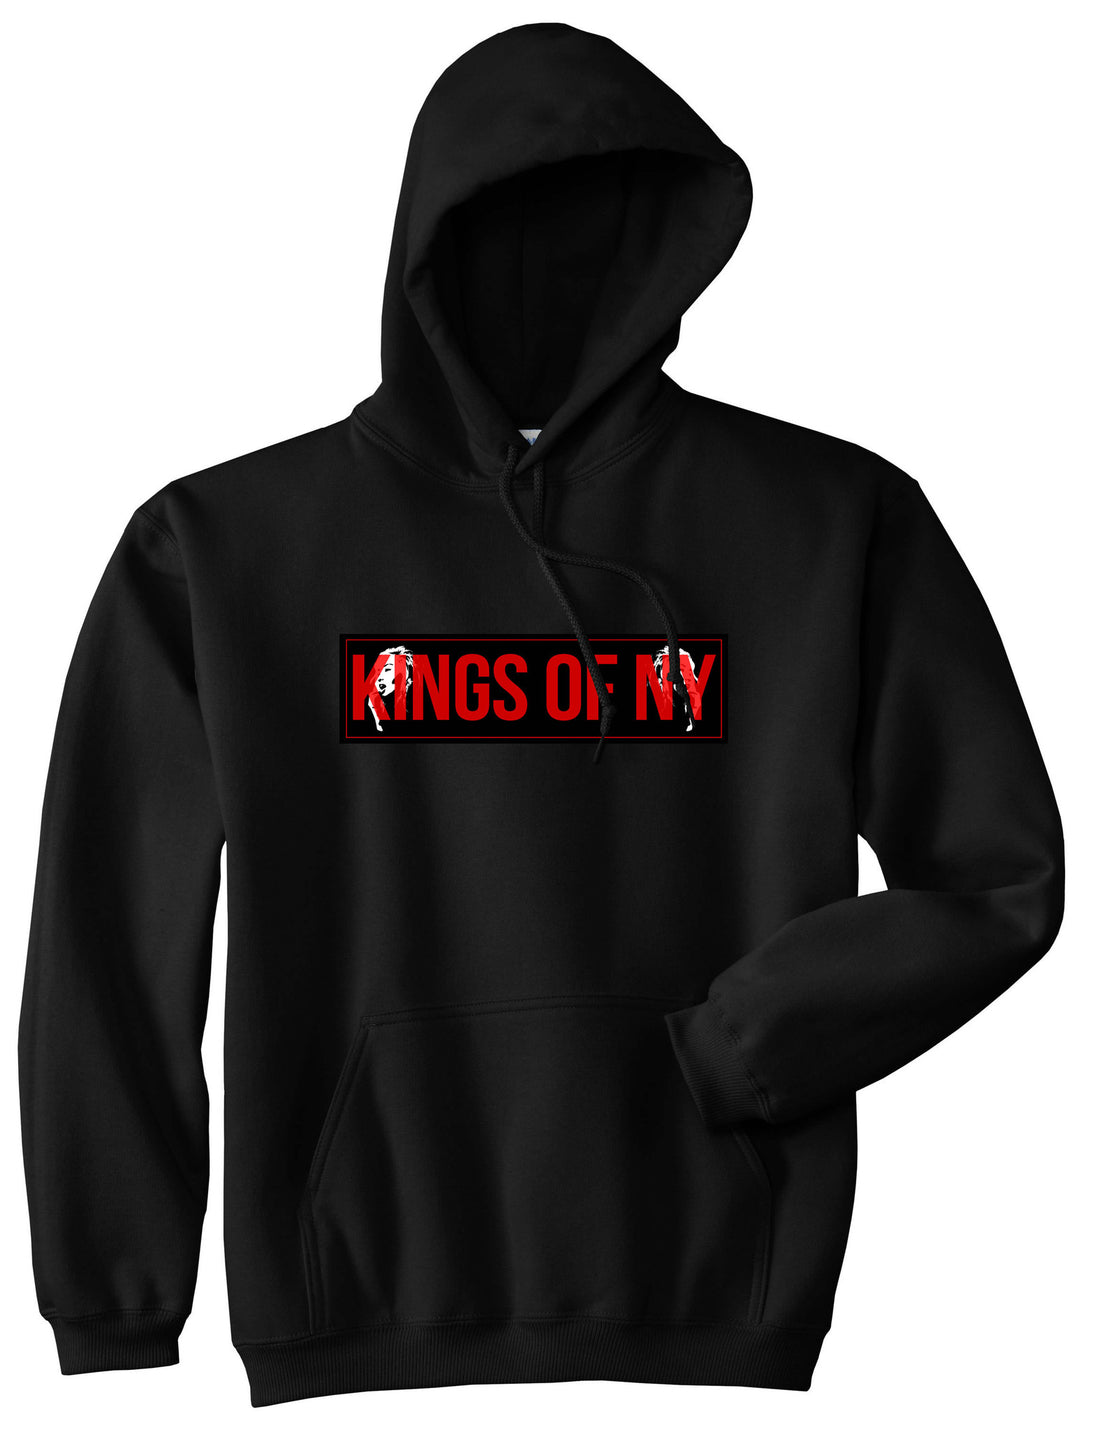 Red Girl Logo Print Boys Kids Pullover Hoodie Hoody in Black by Kings Of NY